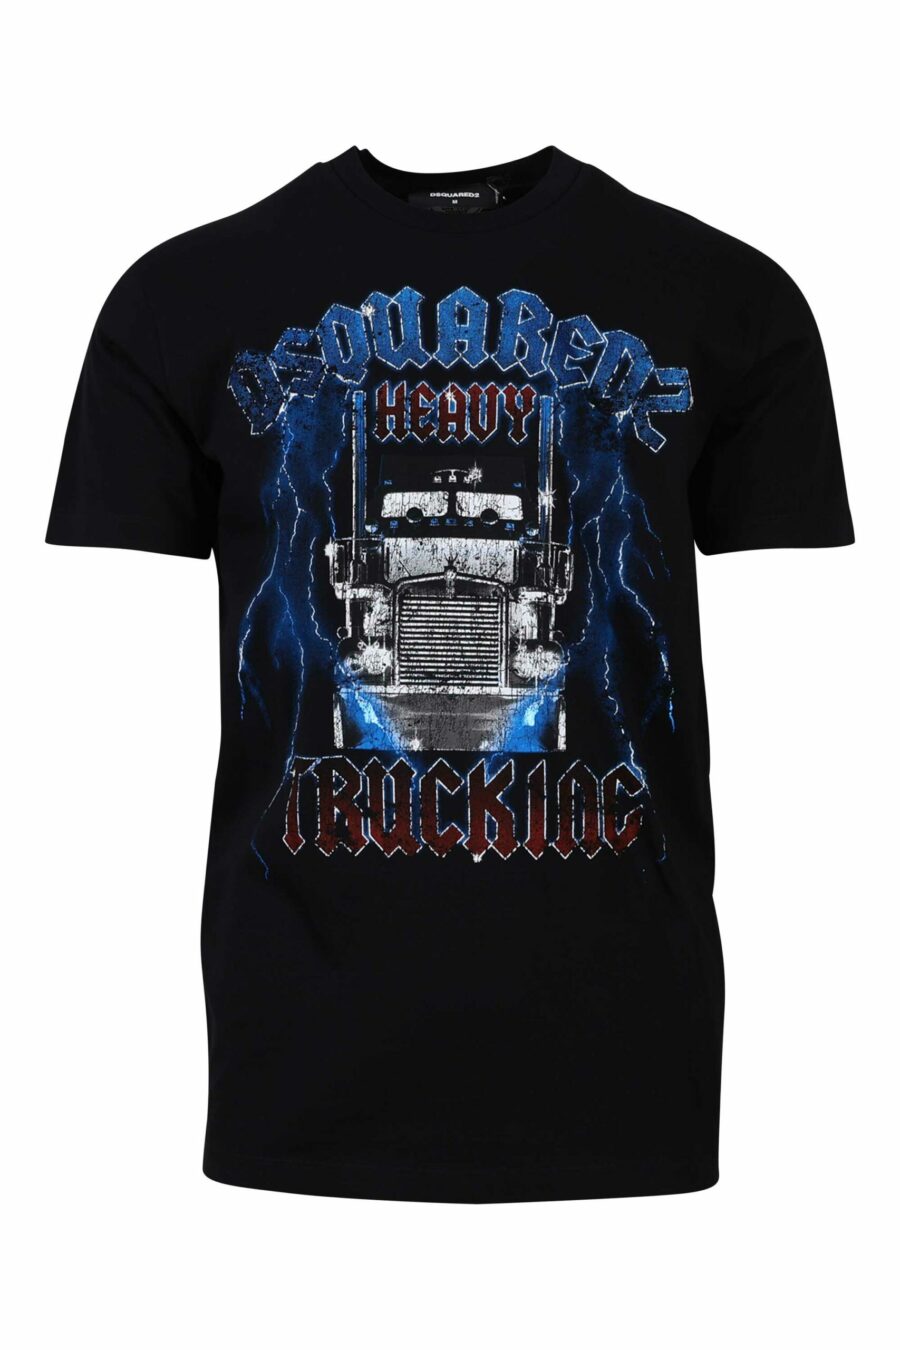 T-shirt preta com maxilogo gótico azul e vermelho - 8054148085940 1 scaled